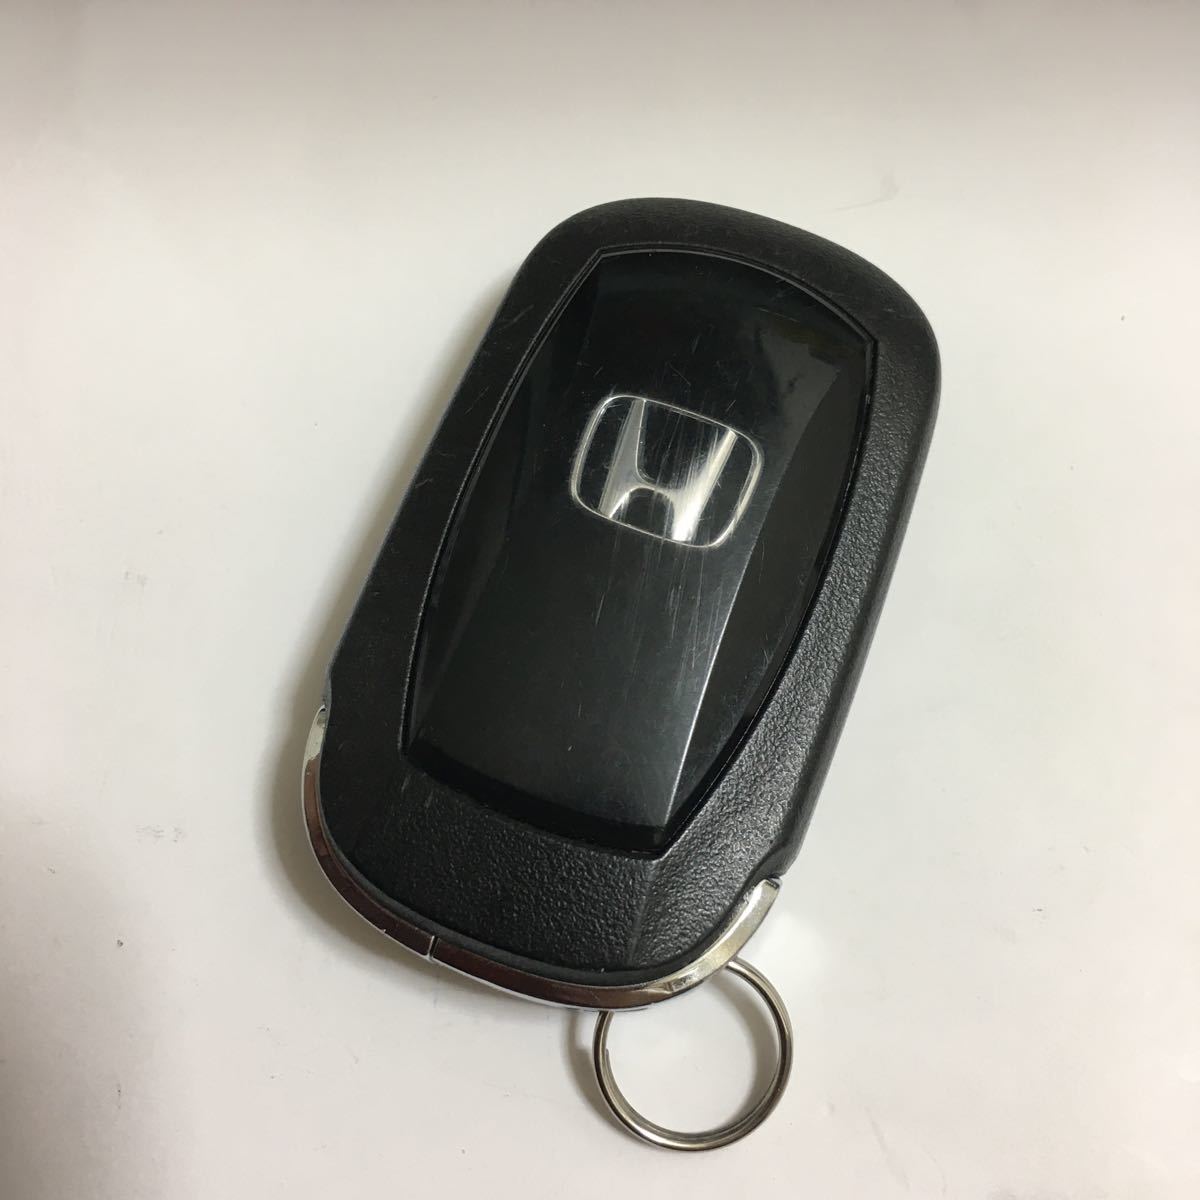  Honda новая модель Vezel с power gate оригинальный "умный" ключ дистанционный ключ дистанционный пульт 3 кнопка 2303262